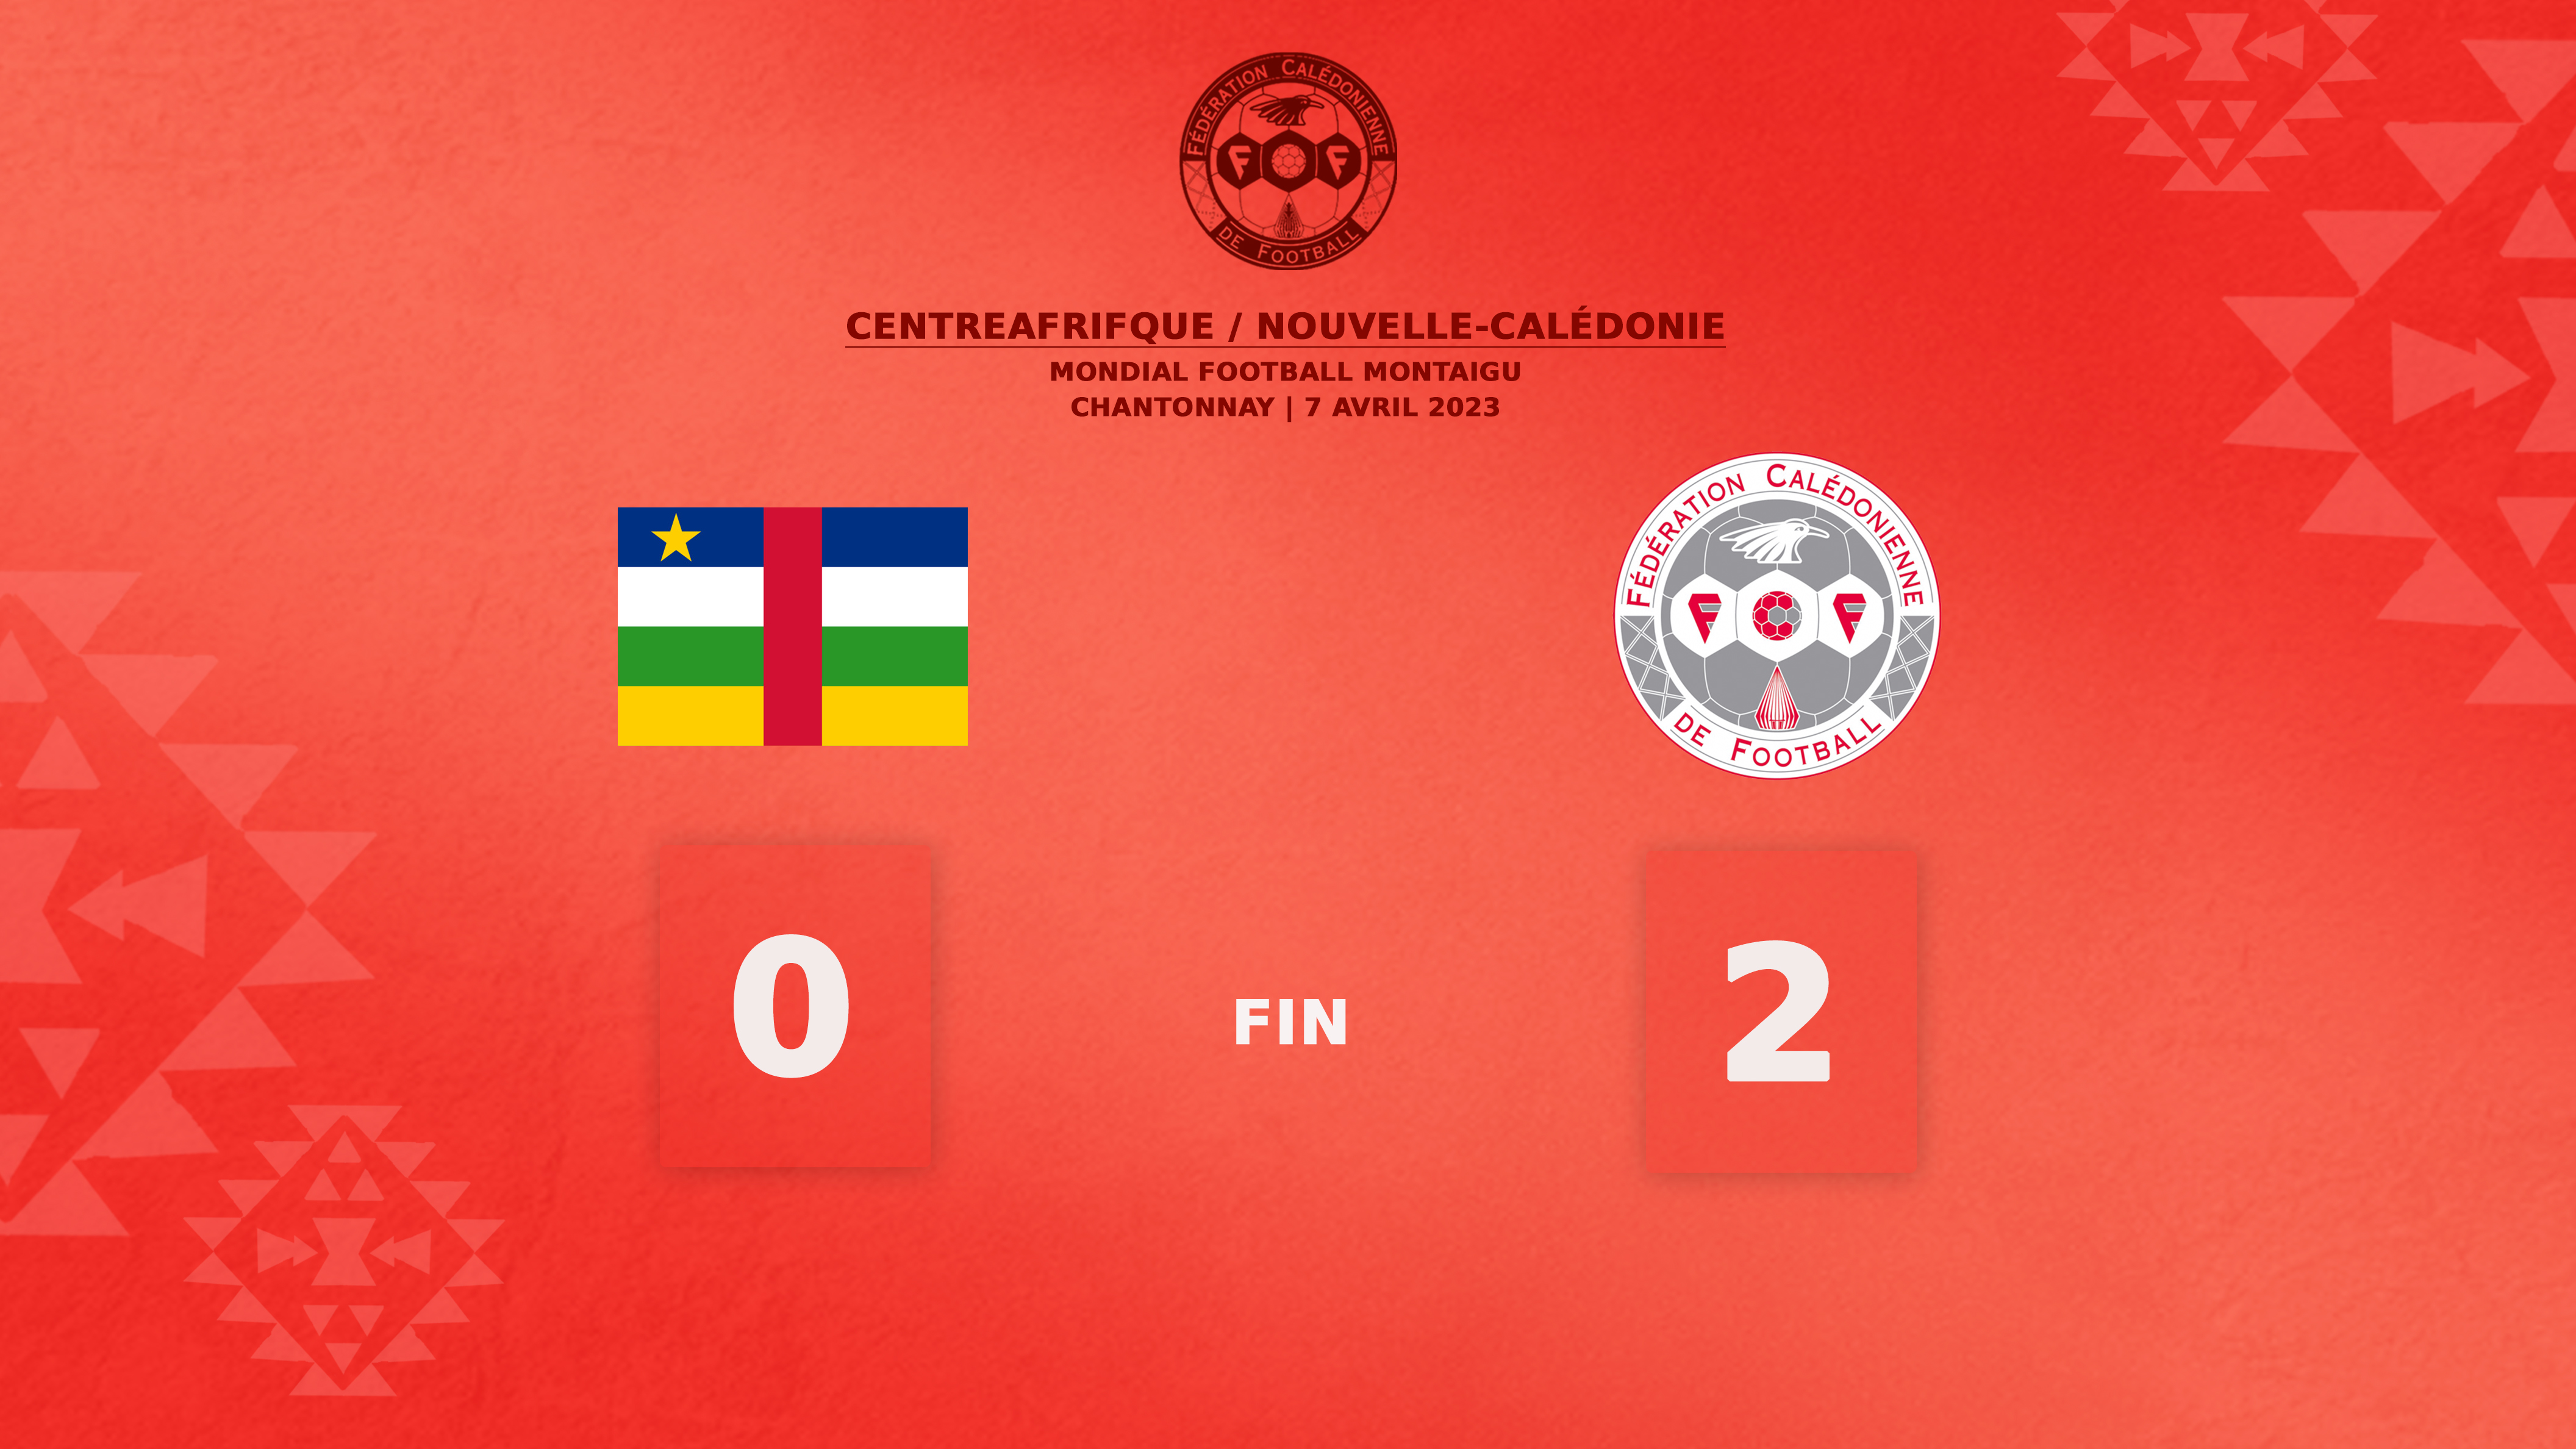 Victoire 2-0 des cagous face au CentreAfrique (dernier match de poule) | Mondial Football Montaigu (Direct TV)